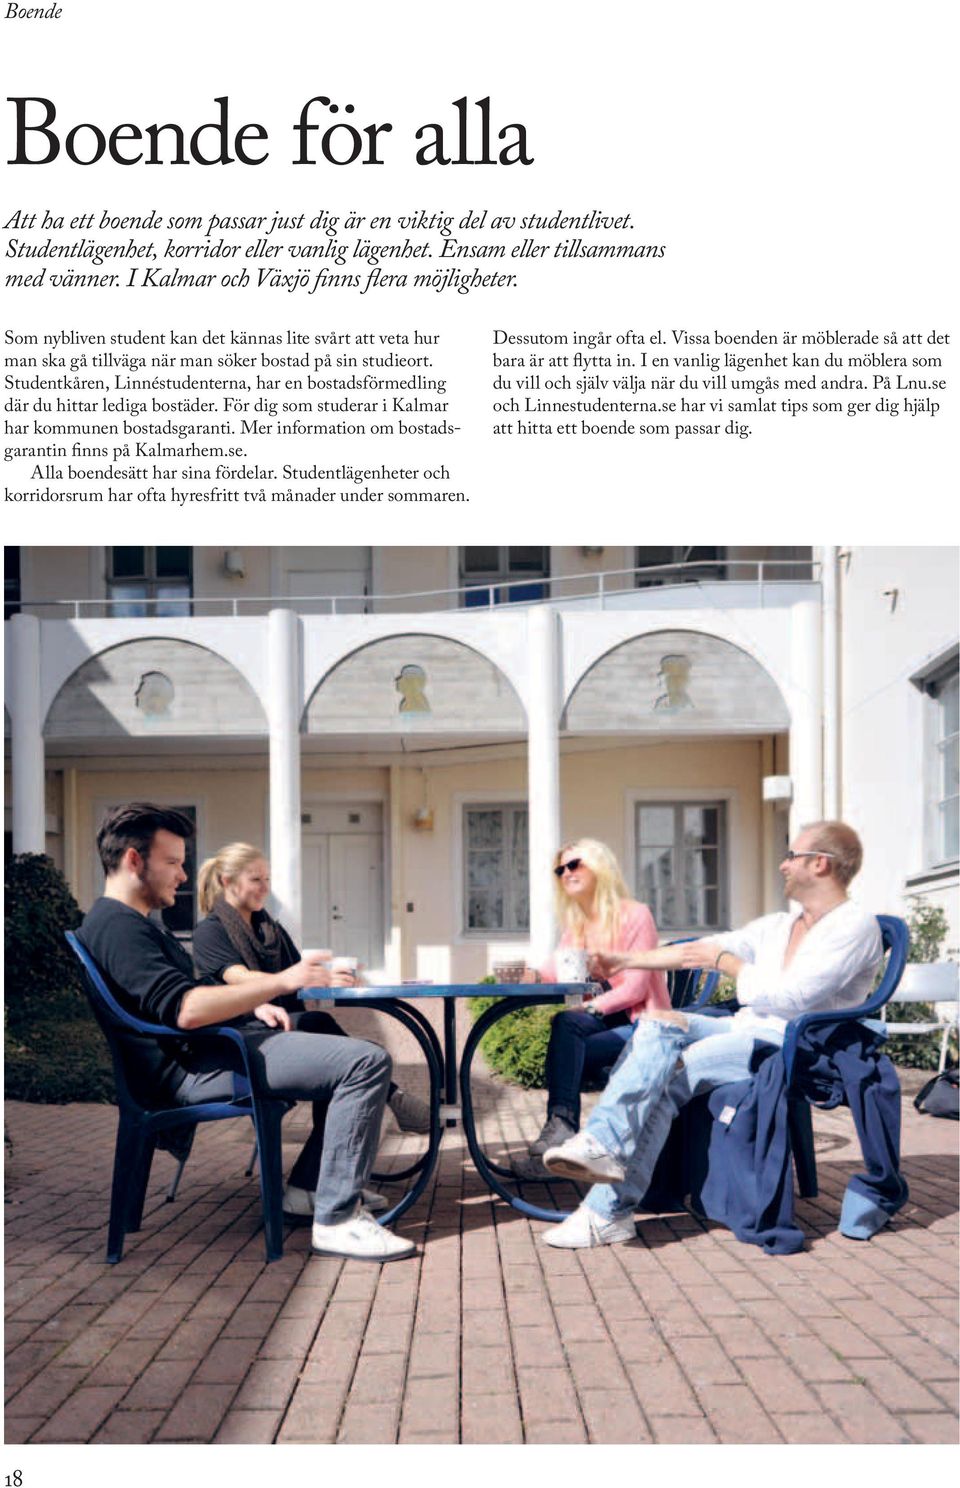 Studentkåren, Linnéstudenterna, har en bostadsförmedling där du hittar lediga bostäder. För dig som studerar i Kalmar har kommunen bostadsgaranti.